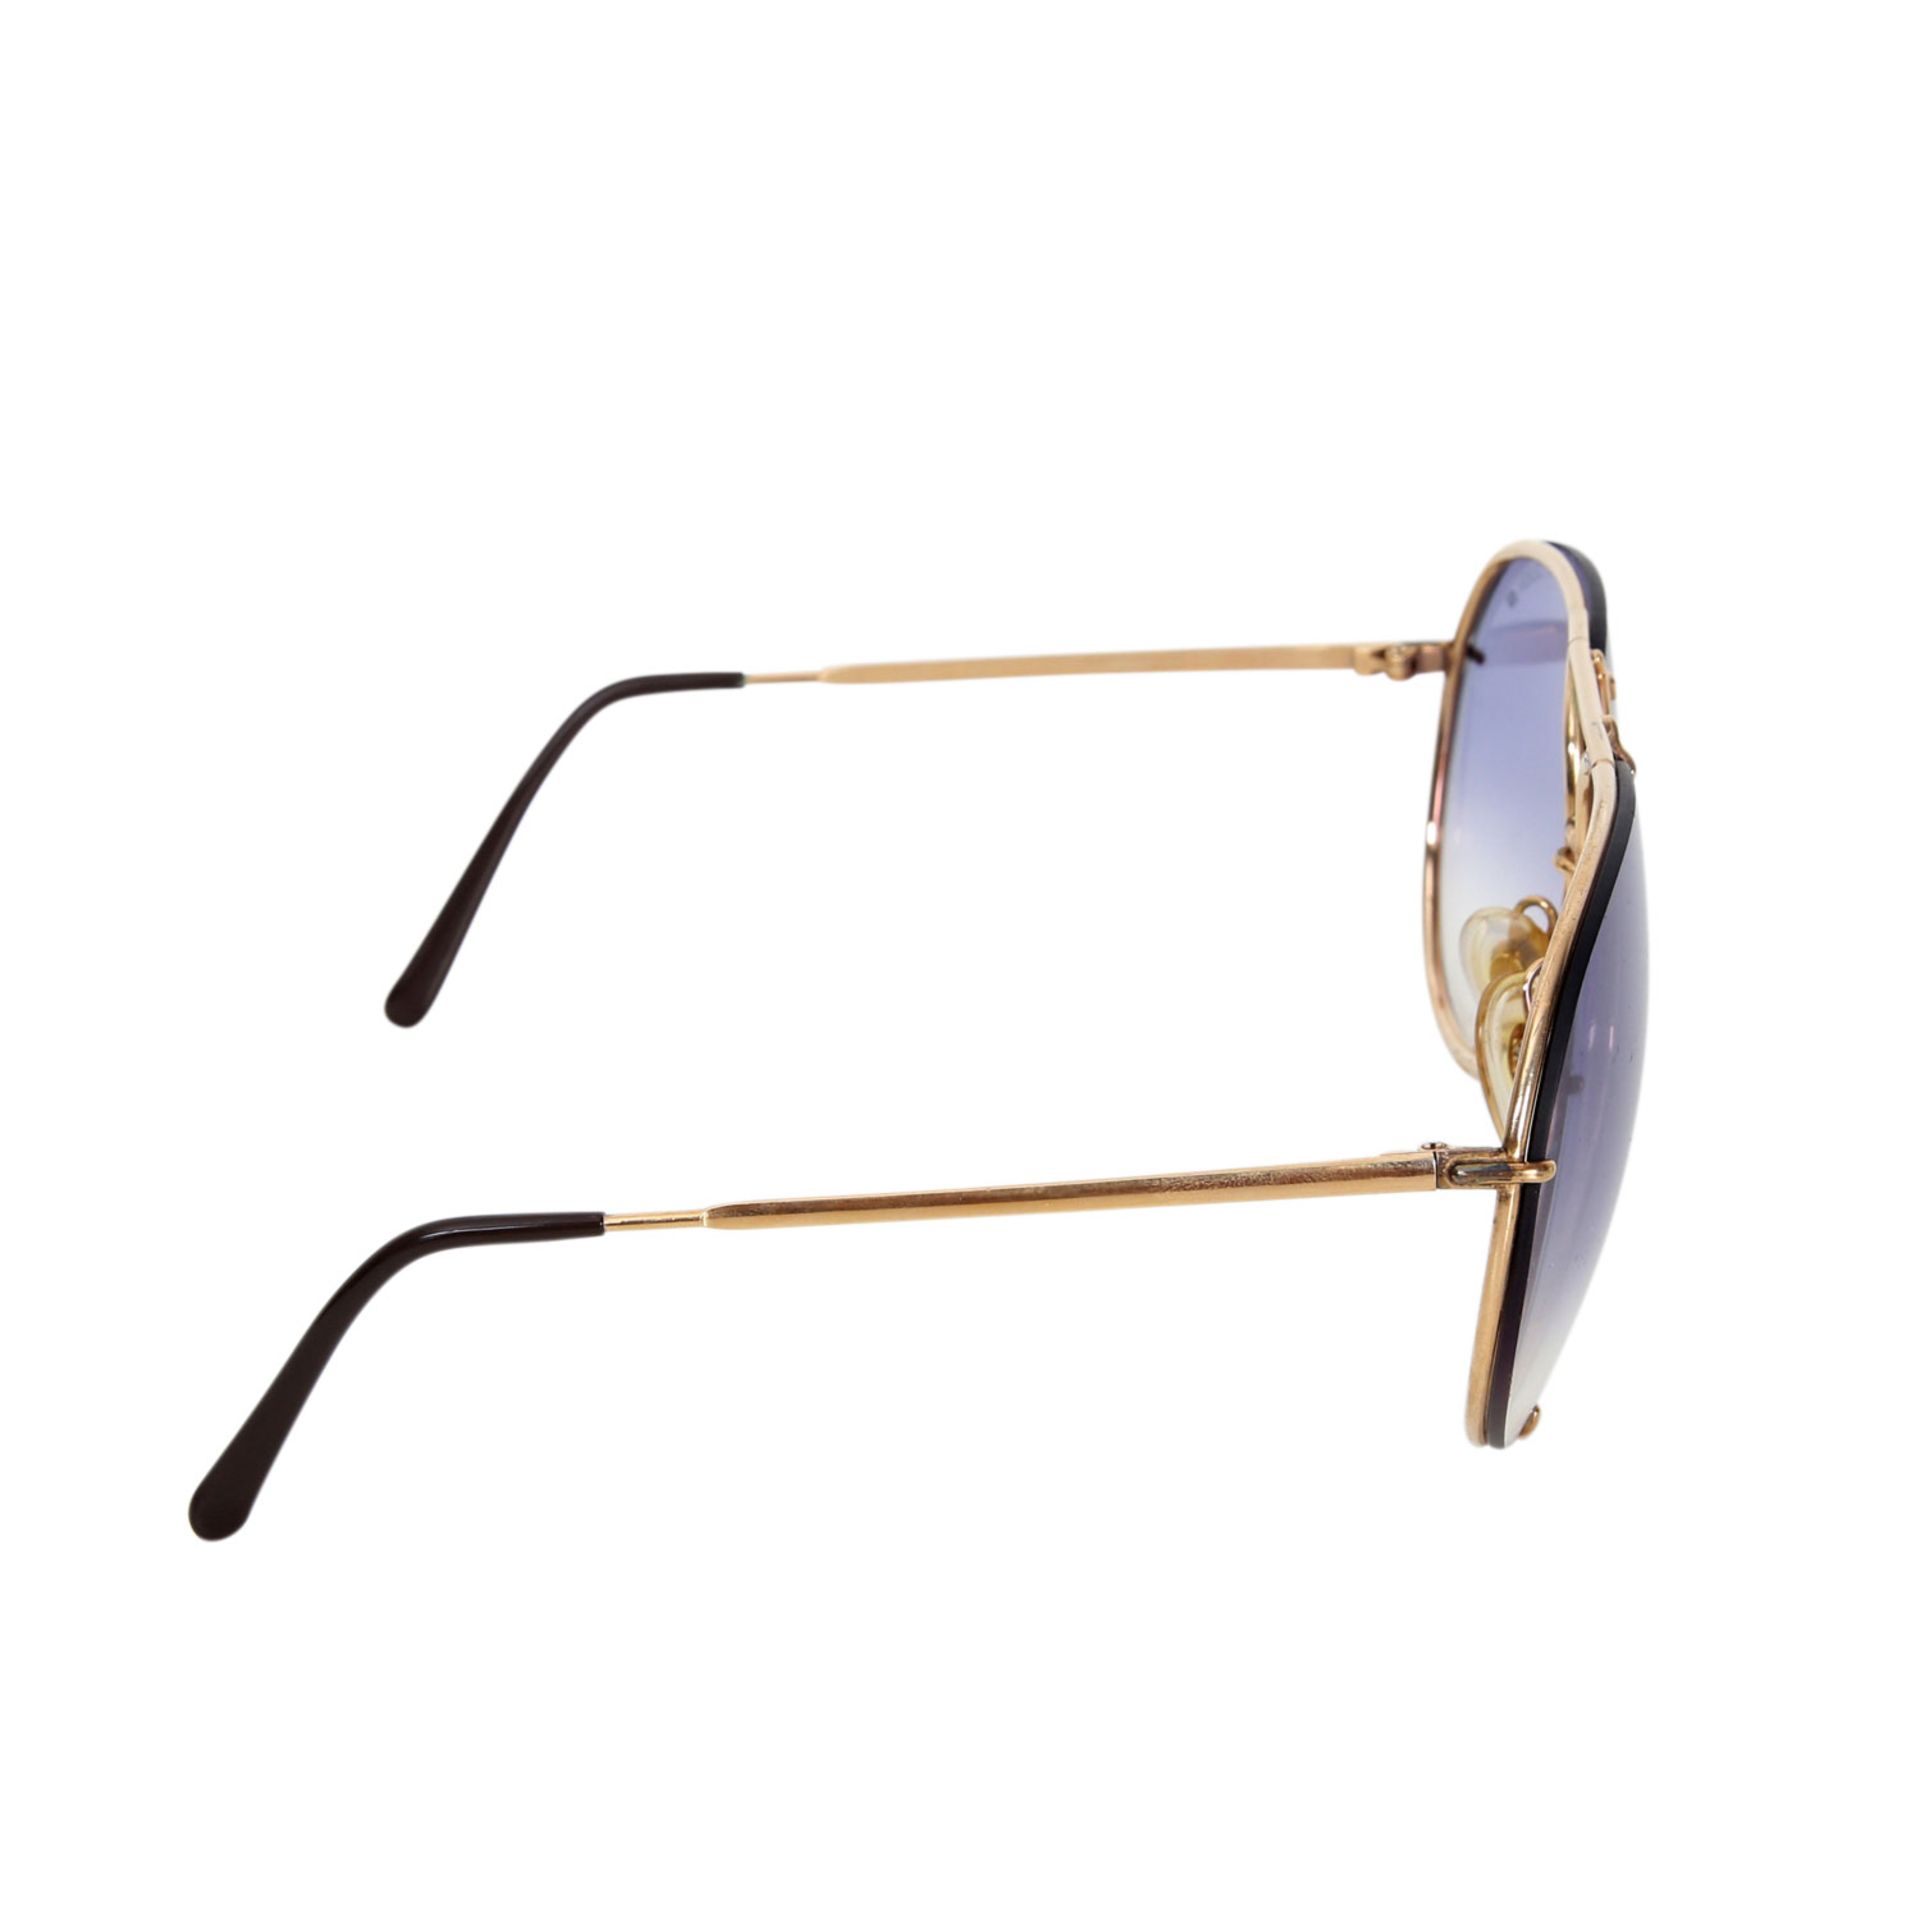 PORSCHE DESIGN BY CARRERA Sonnenbrille. Filigranes, goldfarbenes Gestel;, im Farbverlauf getönte - Bild 3 aus 6